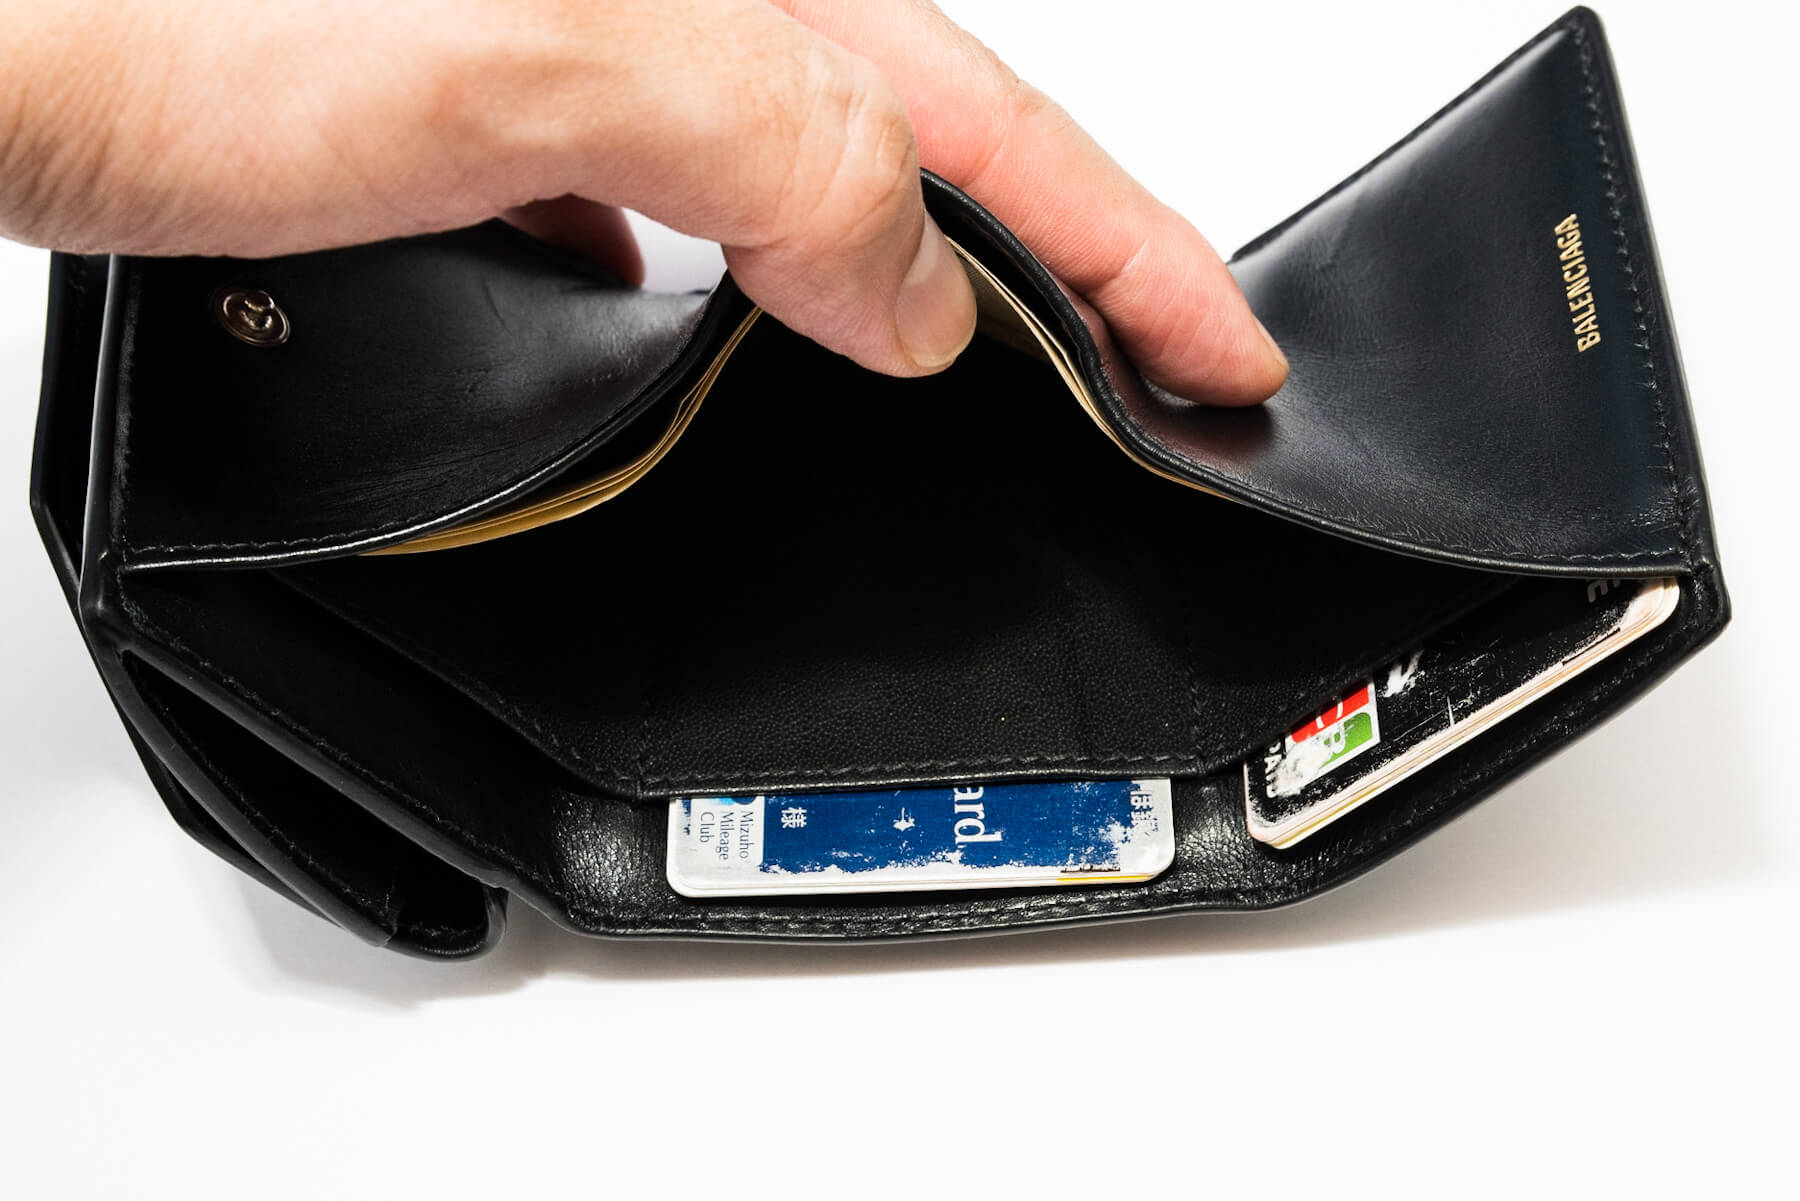 BALENCIAGAの小さい財布に一目惚れ。日本未発売モデル「ETUI MINI 